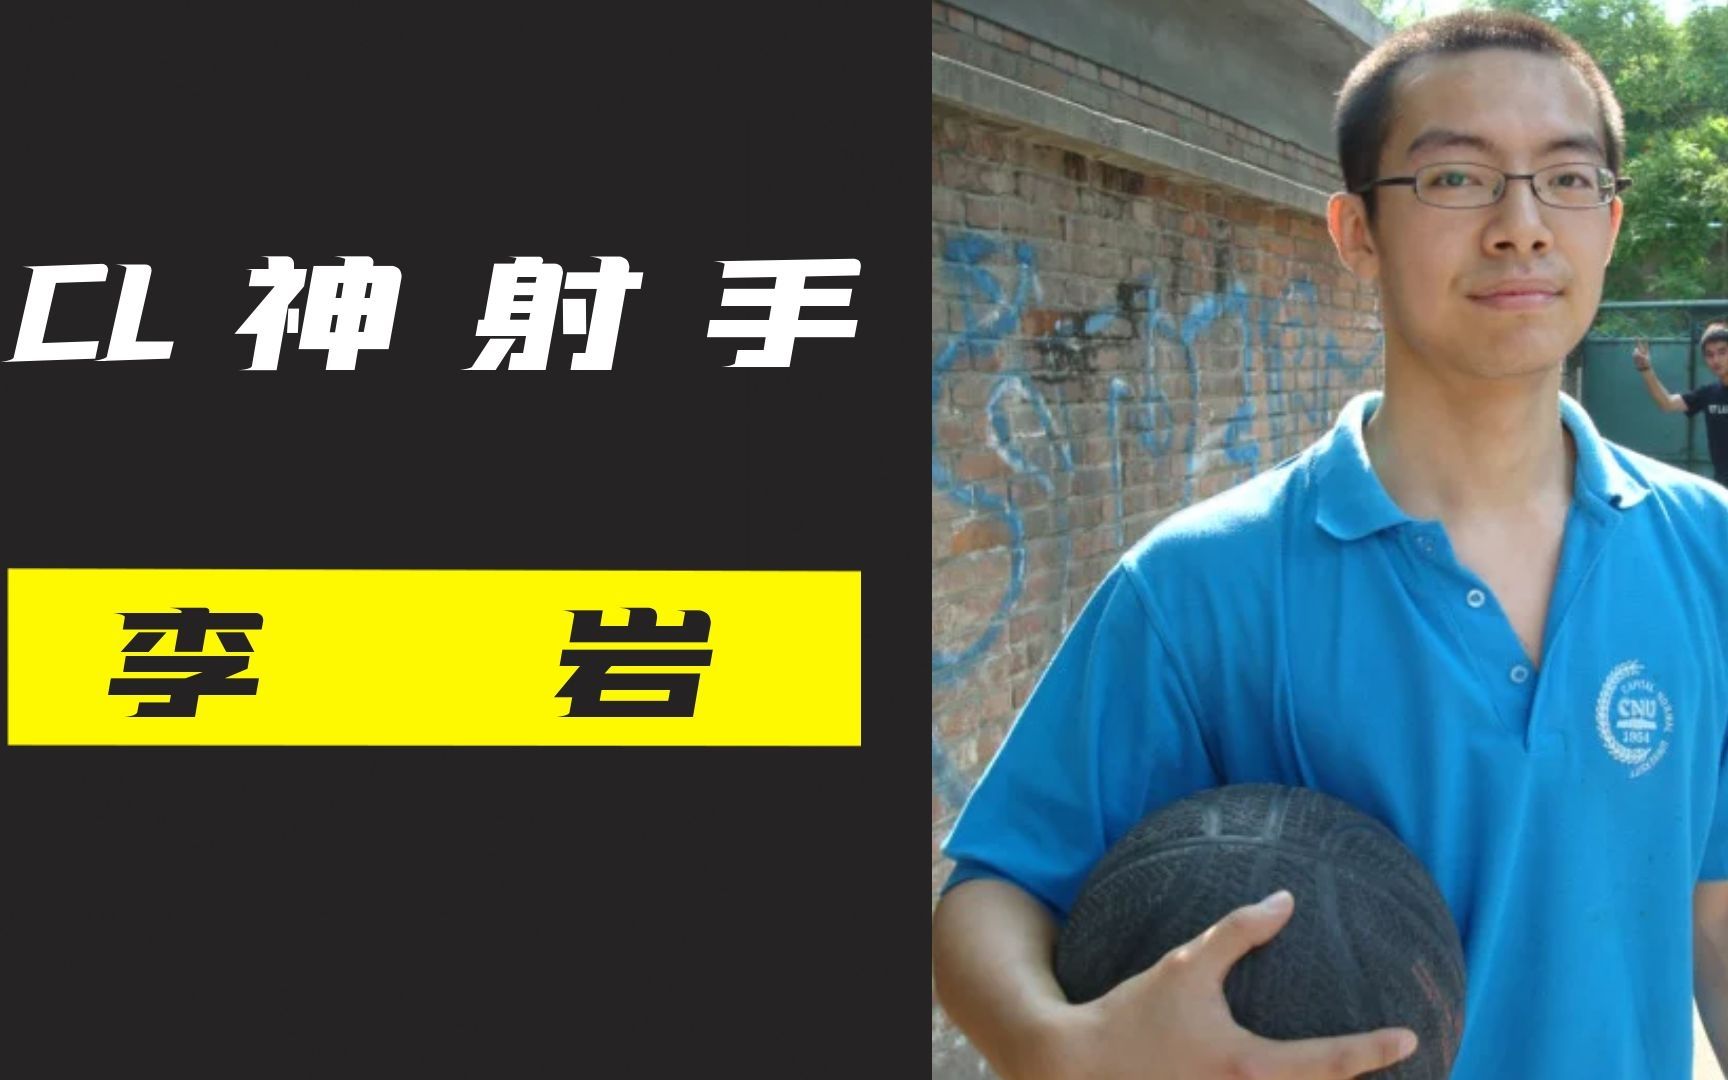 中国街球传奇李岩，曾经CL的神射手，他的球技和人品并存！